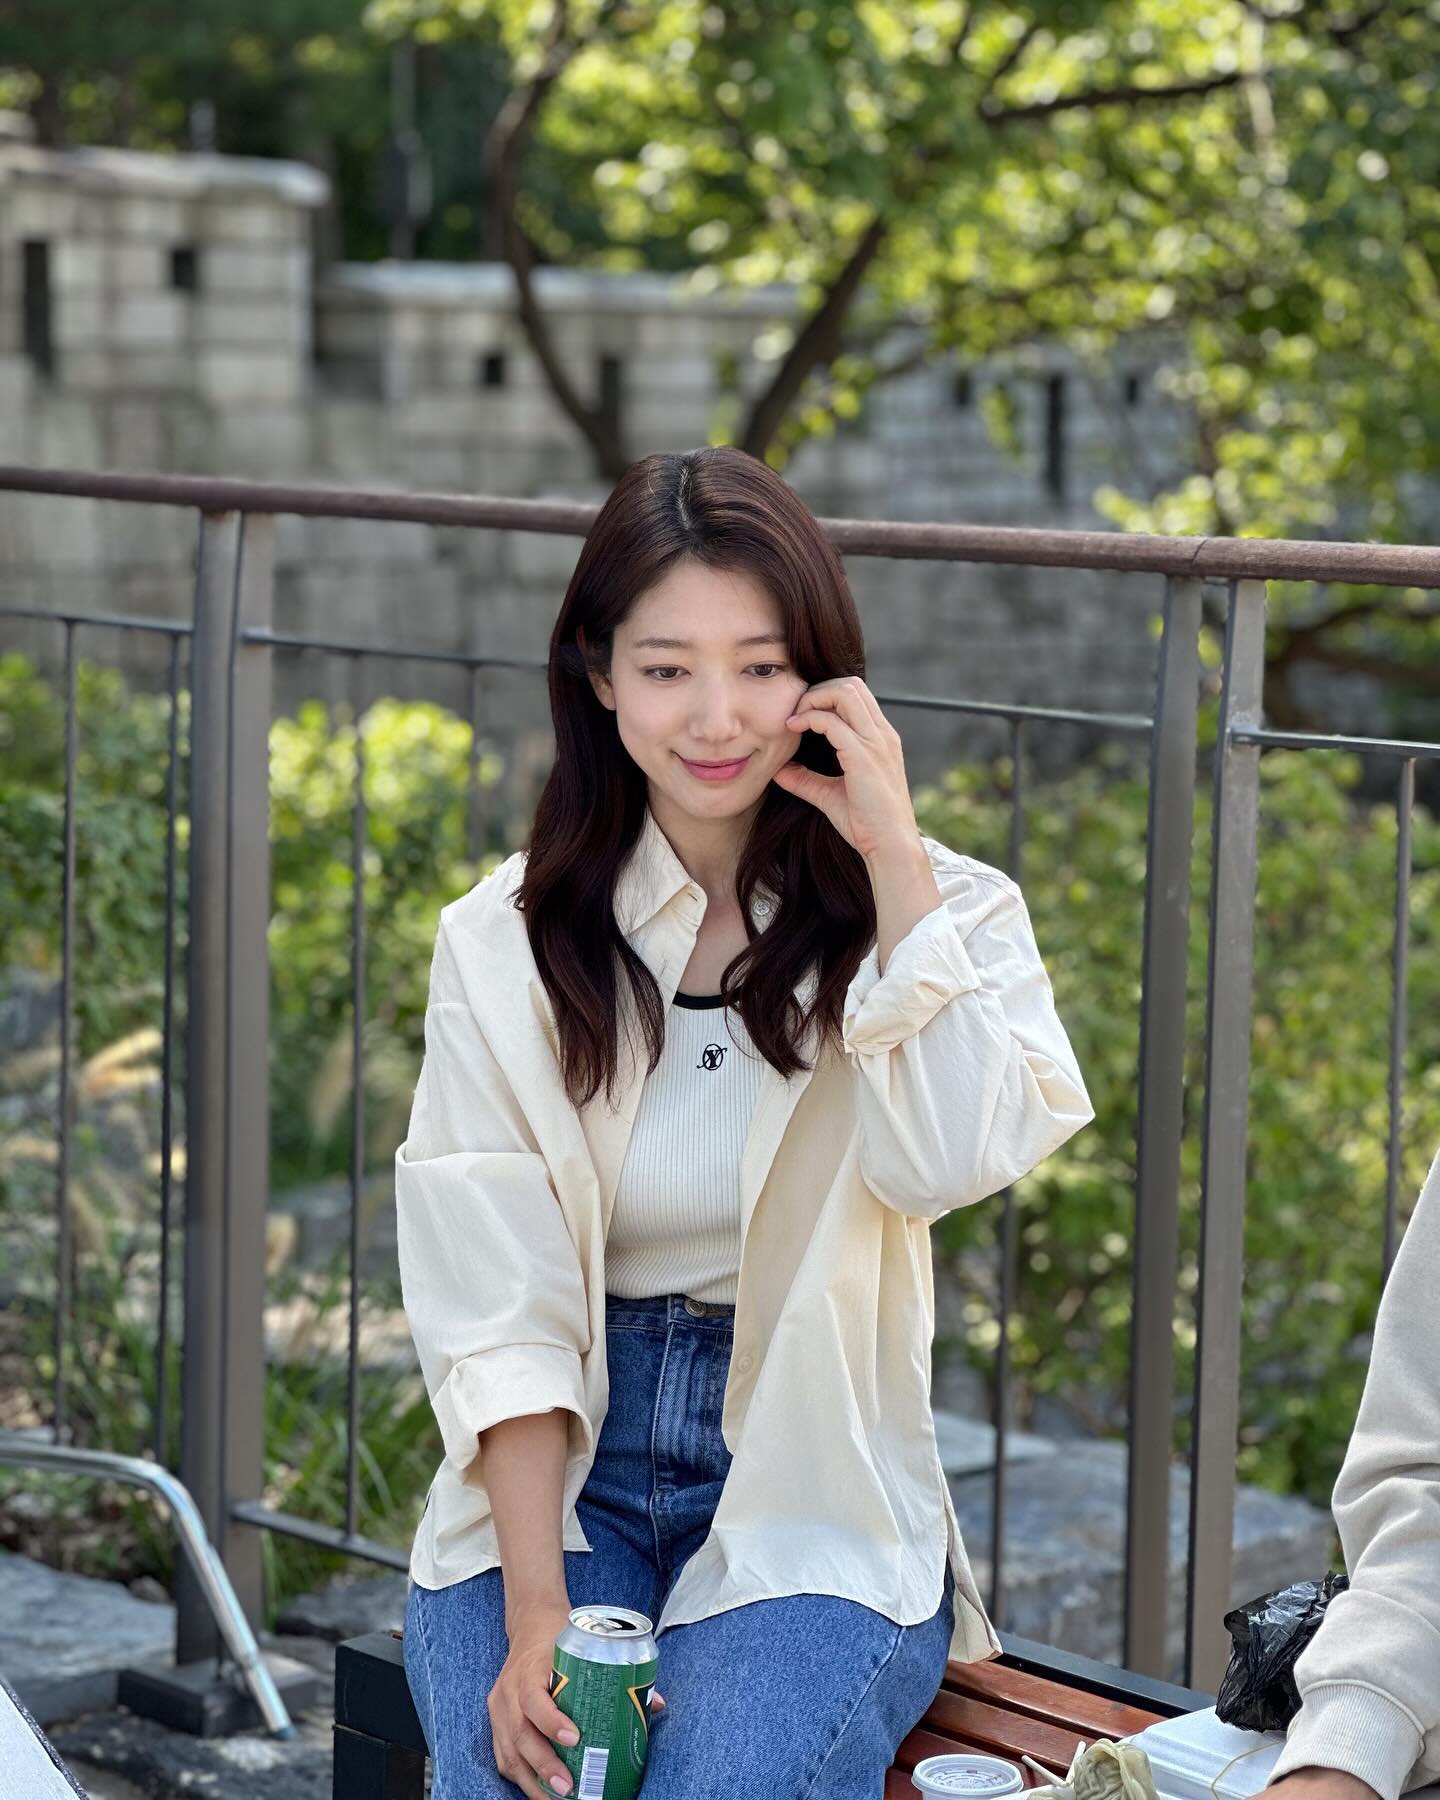 Thời trang trẻ trung và chuẩn thanh lịch của Park Shin Hye trong phim mới - Ảnh 8.